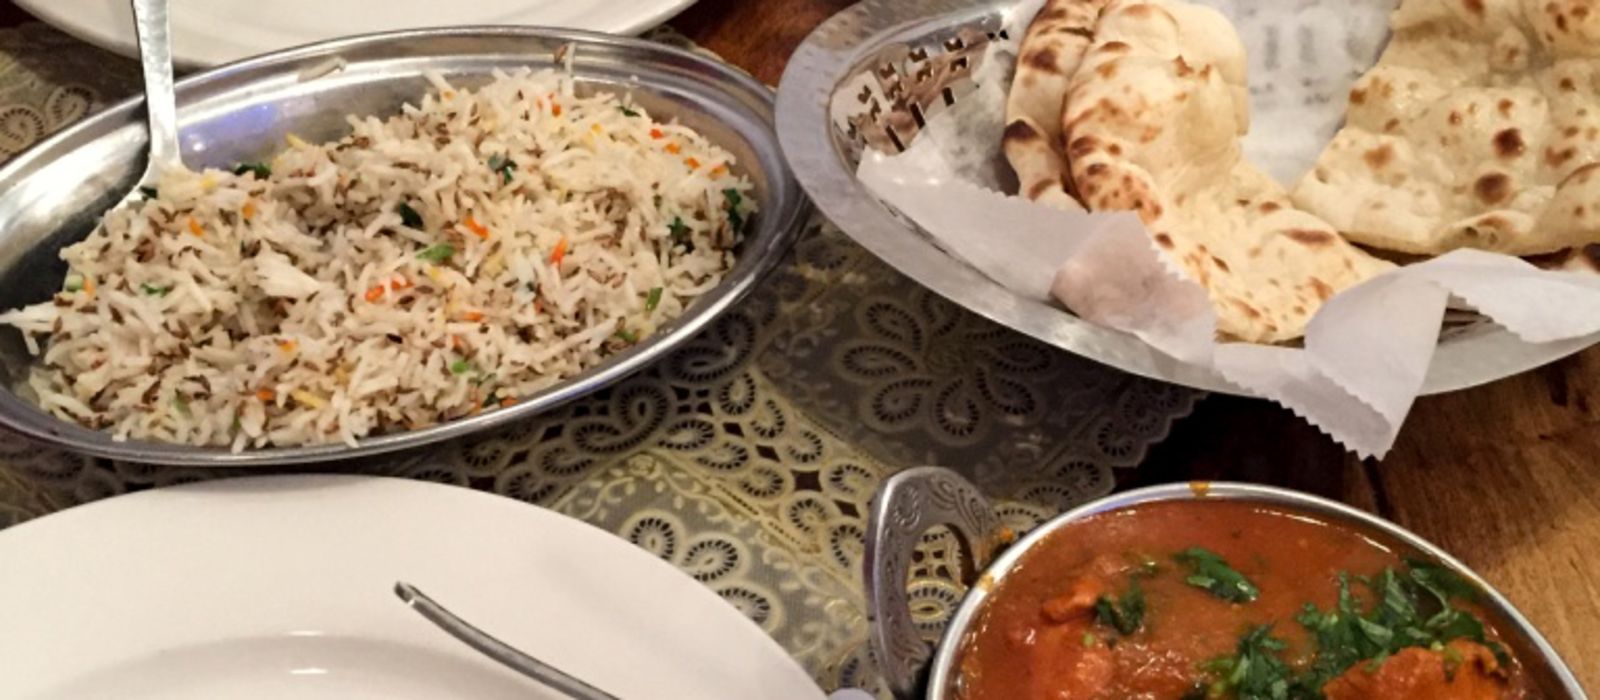 Leckere Gerichte eines Mughlai Restaurants in New York